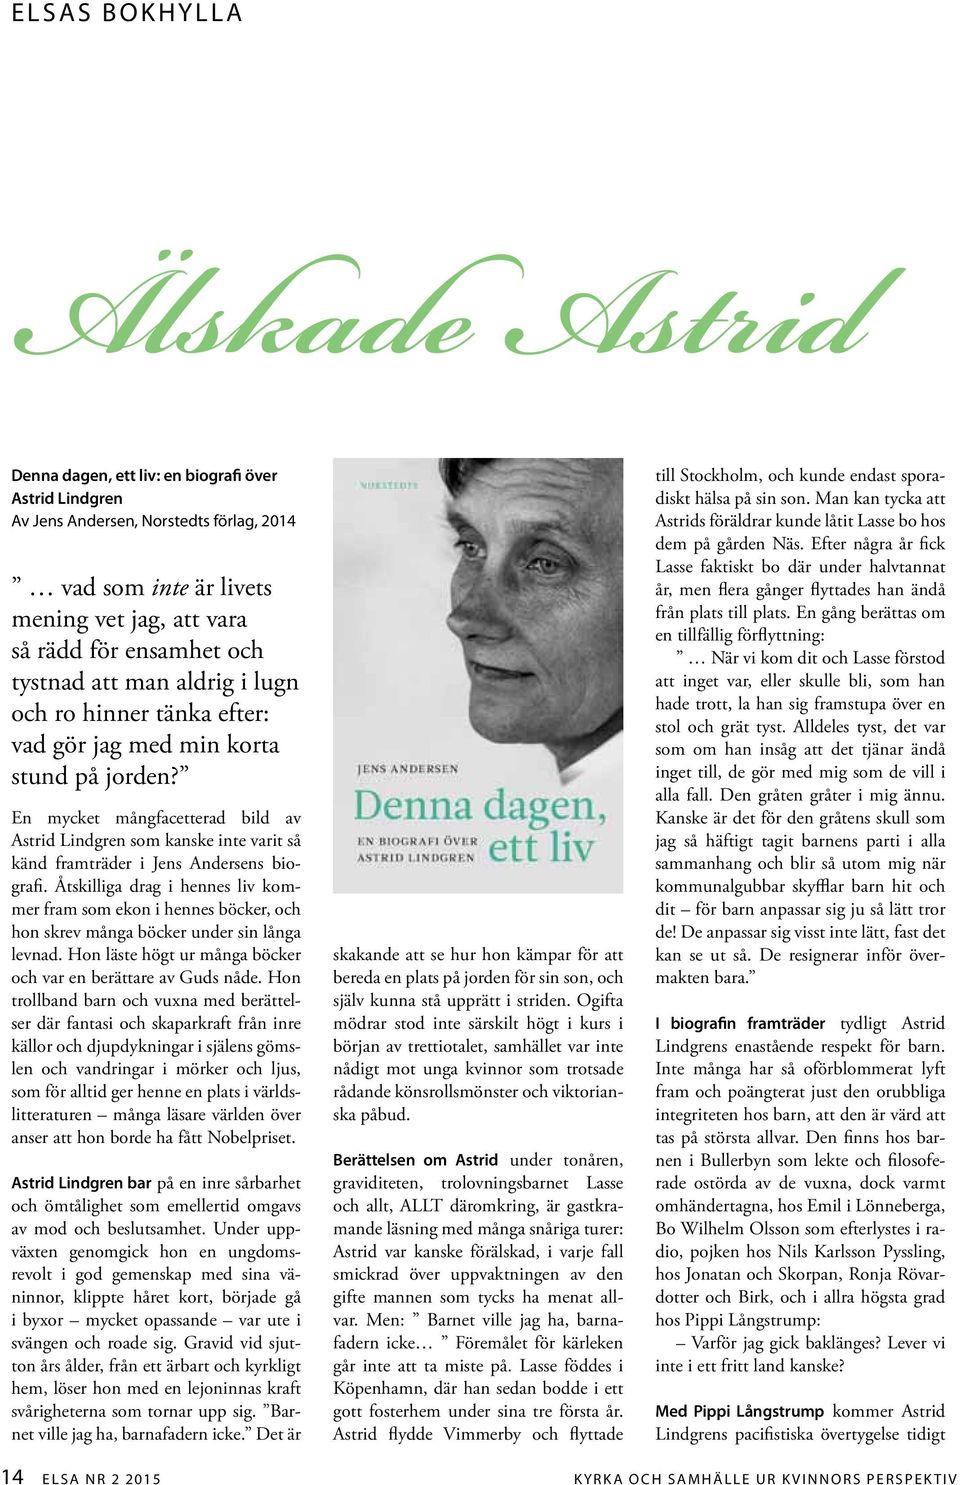 En mycket mångfacetterad bild av Astrid Lindgren som kanske inte varit så känd framträder i Jens Andersens biografi.